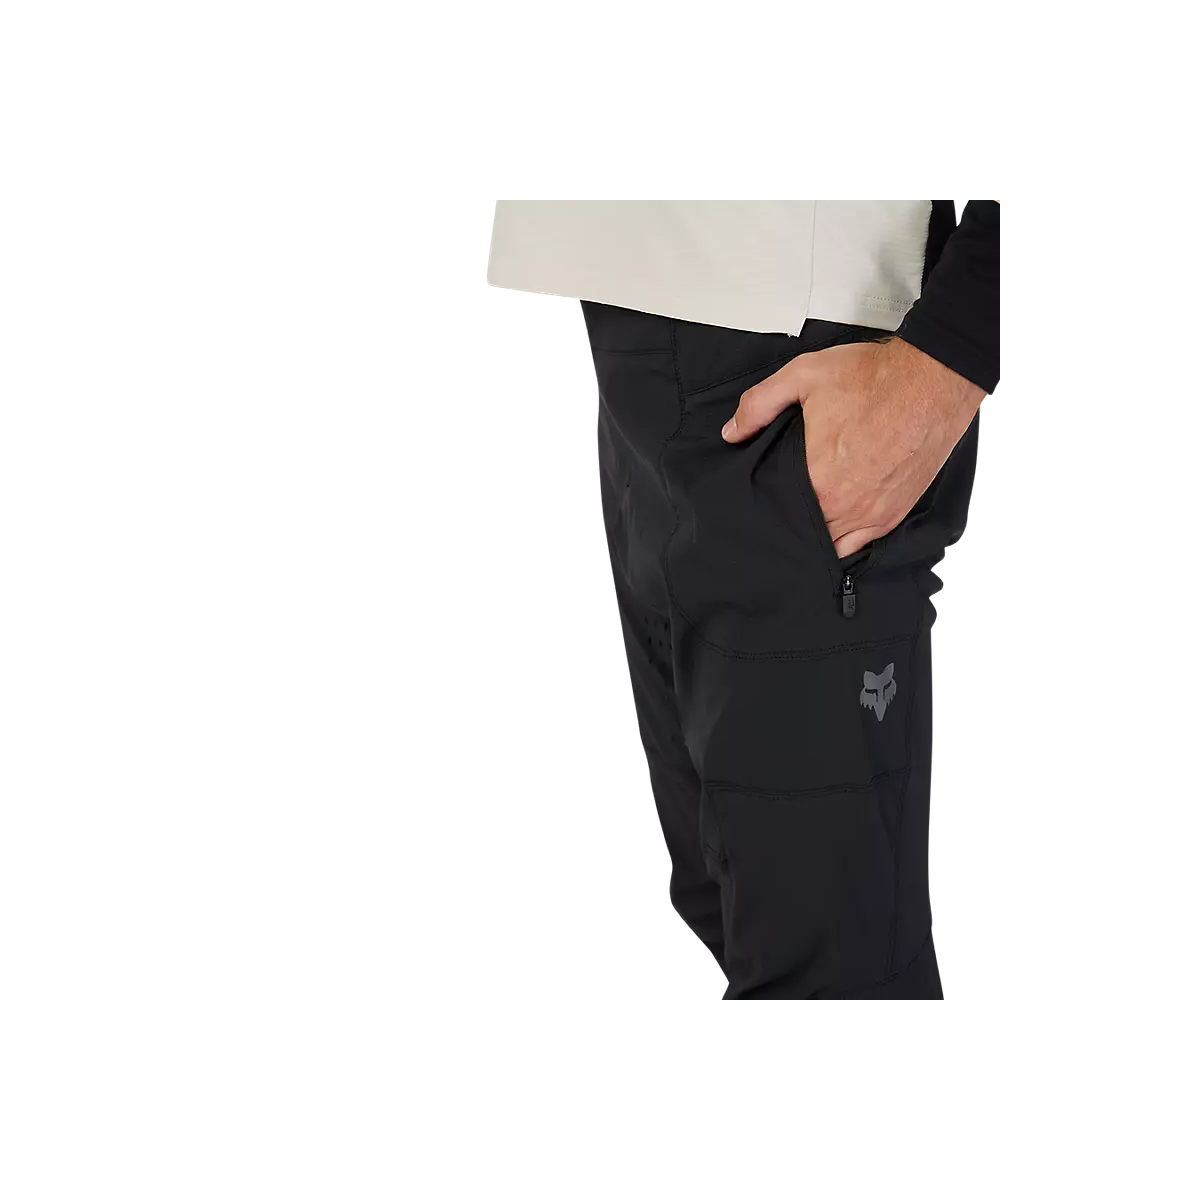 detalle del bolsillo del Pantalón largo EBIKE, Enduro / DH Fox Defend Pro en negro 31002-001